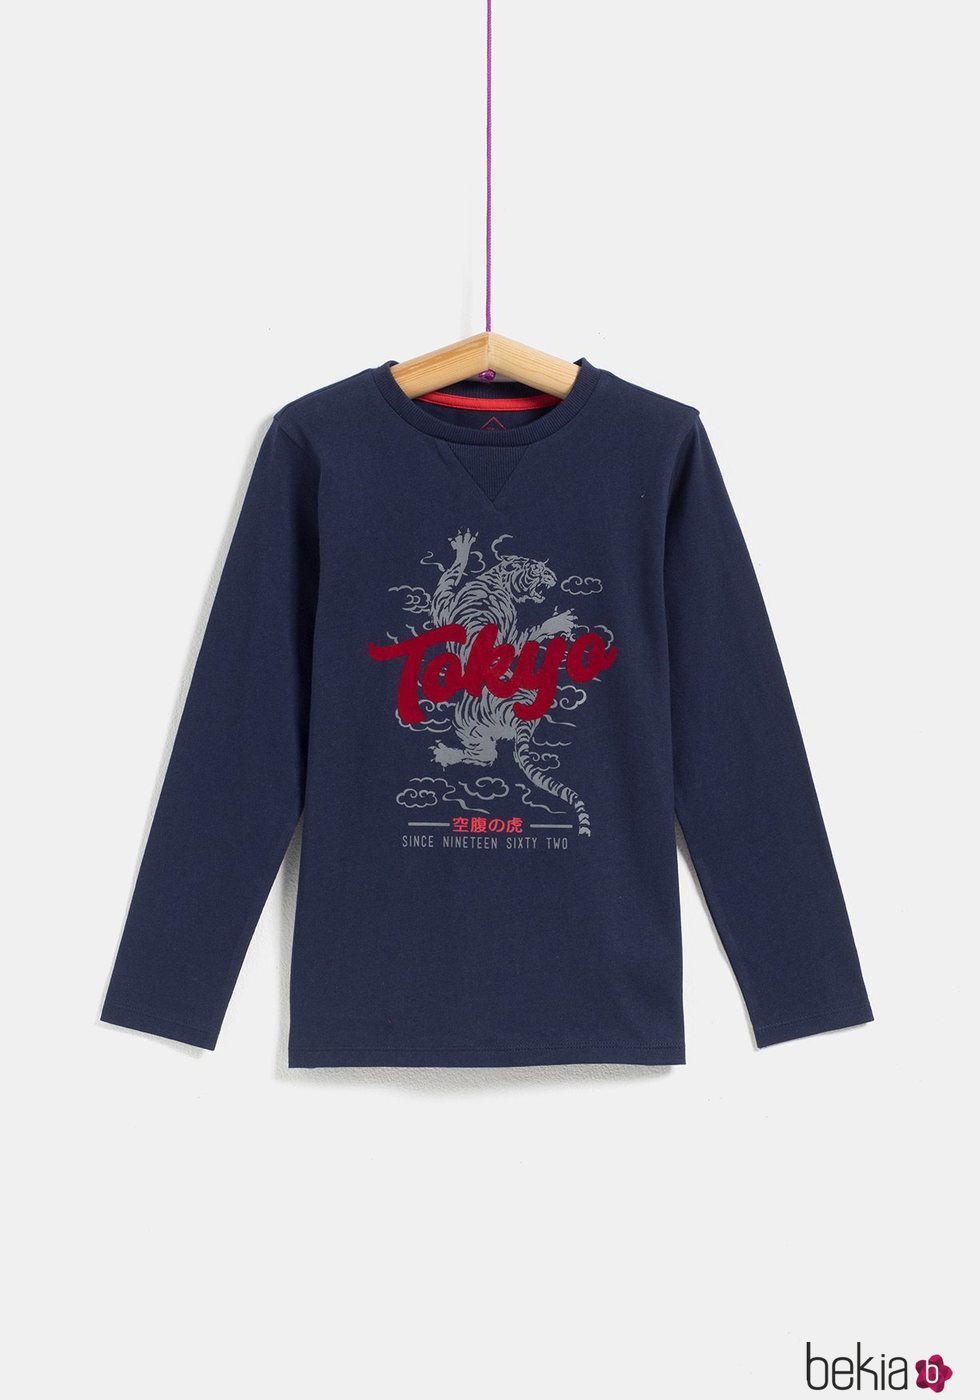 Camiseta negra 'Tokyo' de niño de la colección 'I-O' de Carrefour y TEX para otoño/invierno 2019